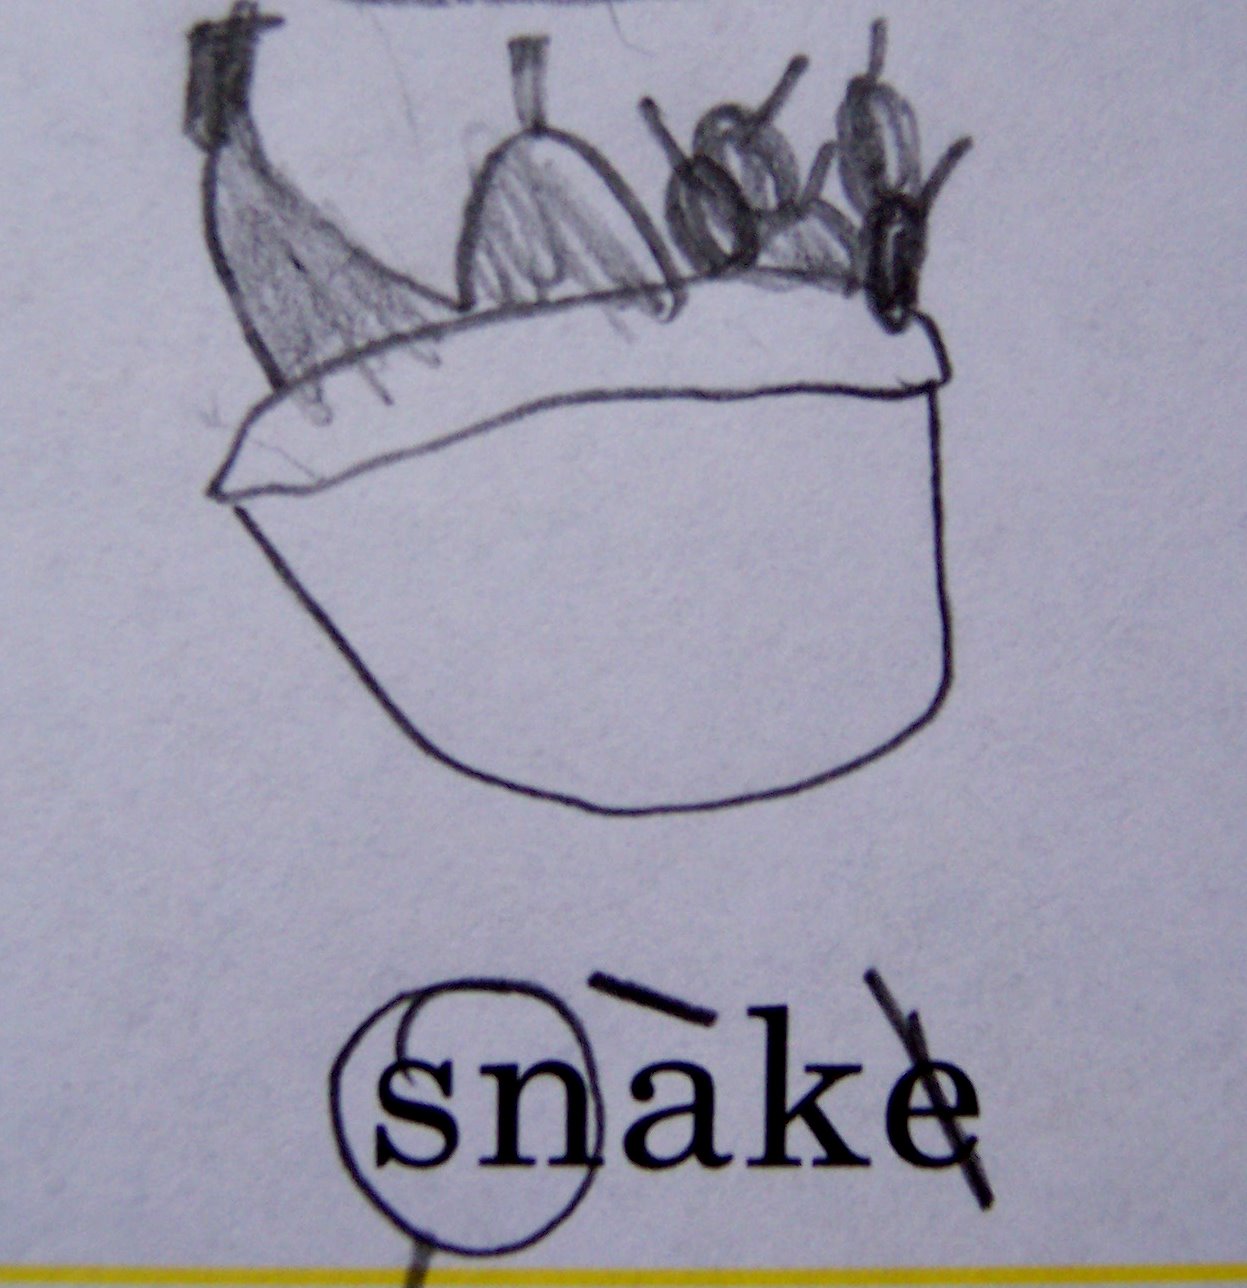 [snake-snack.jpg]